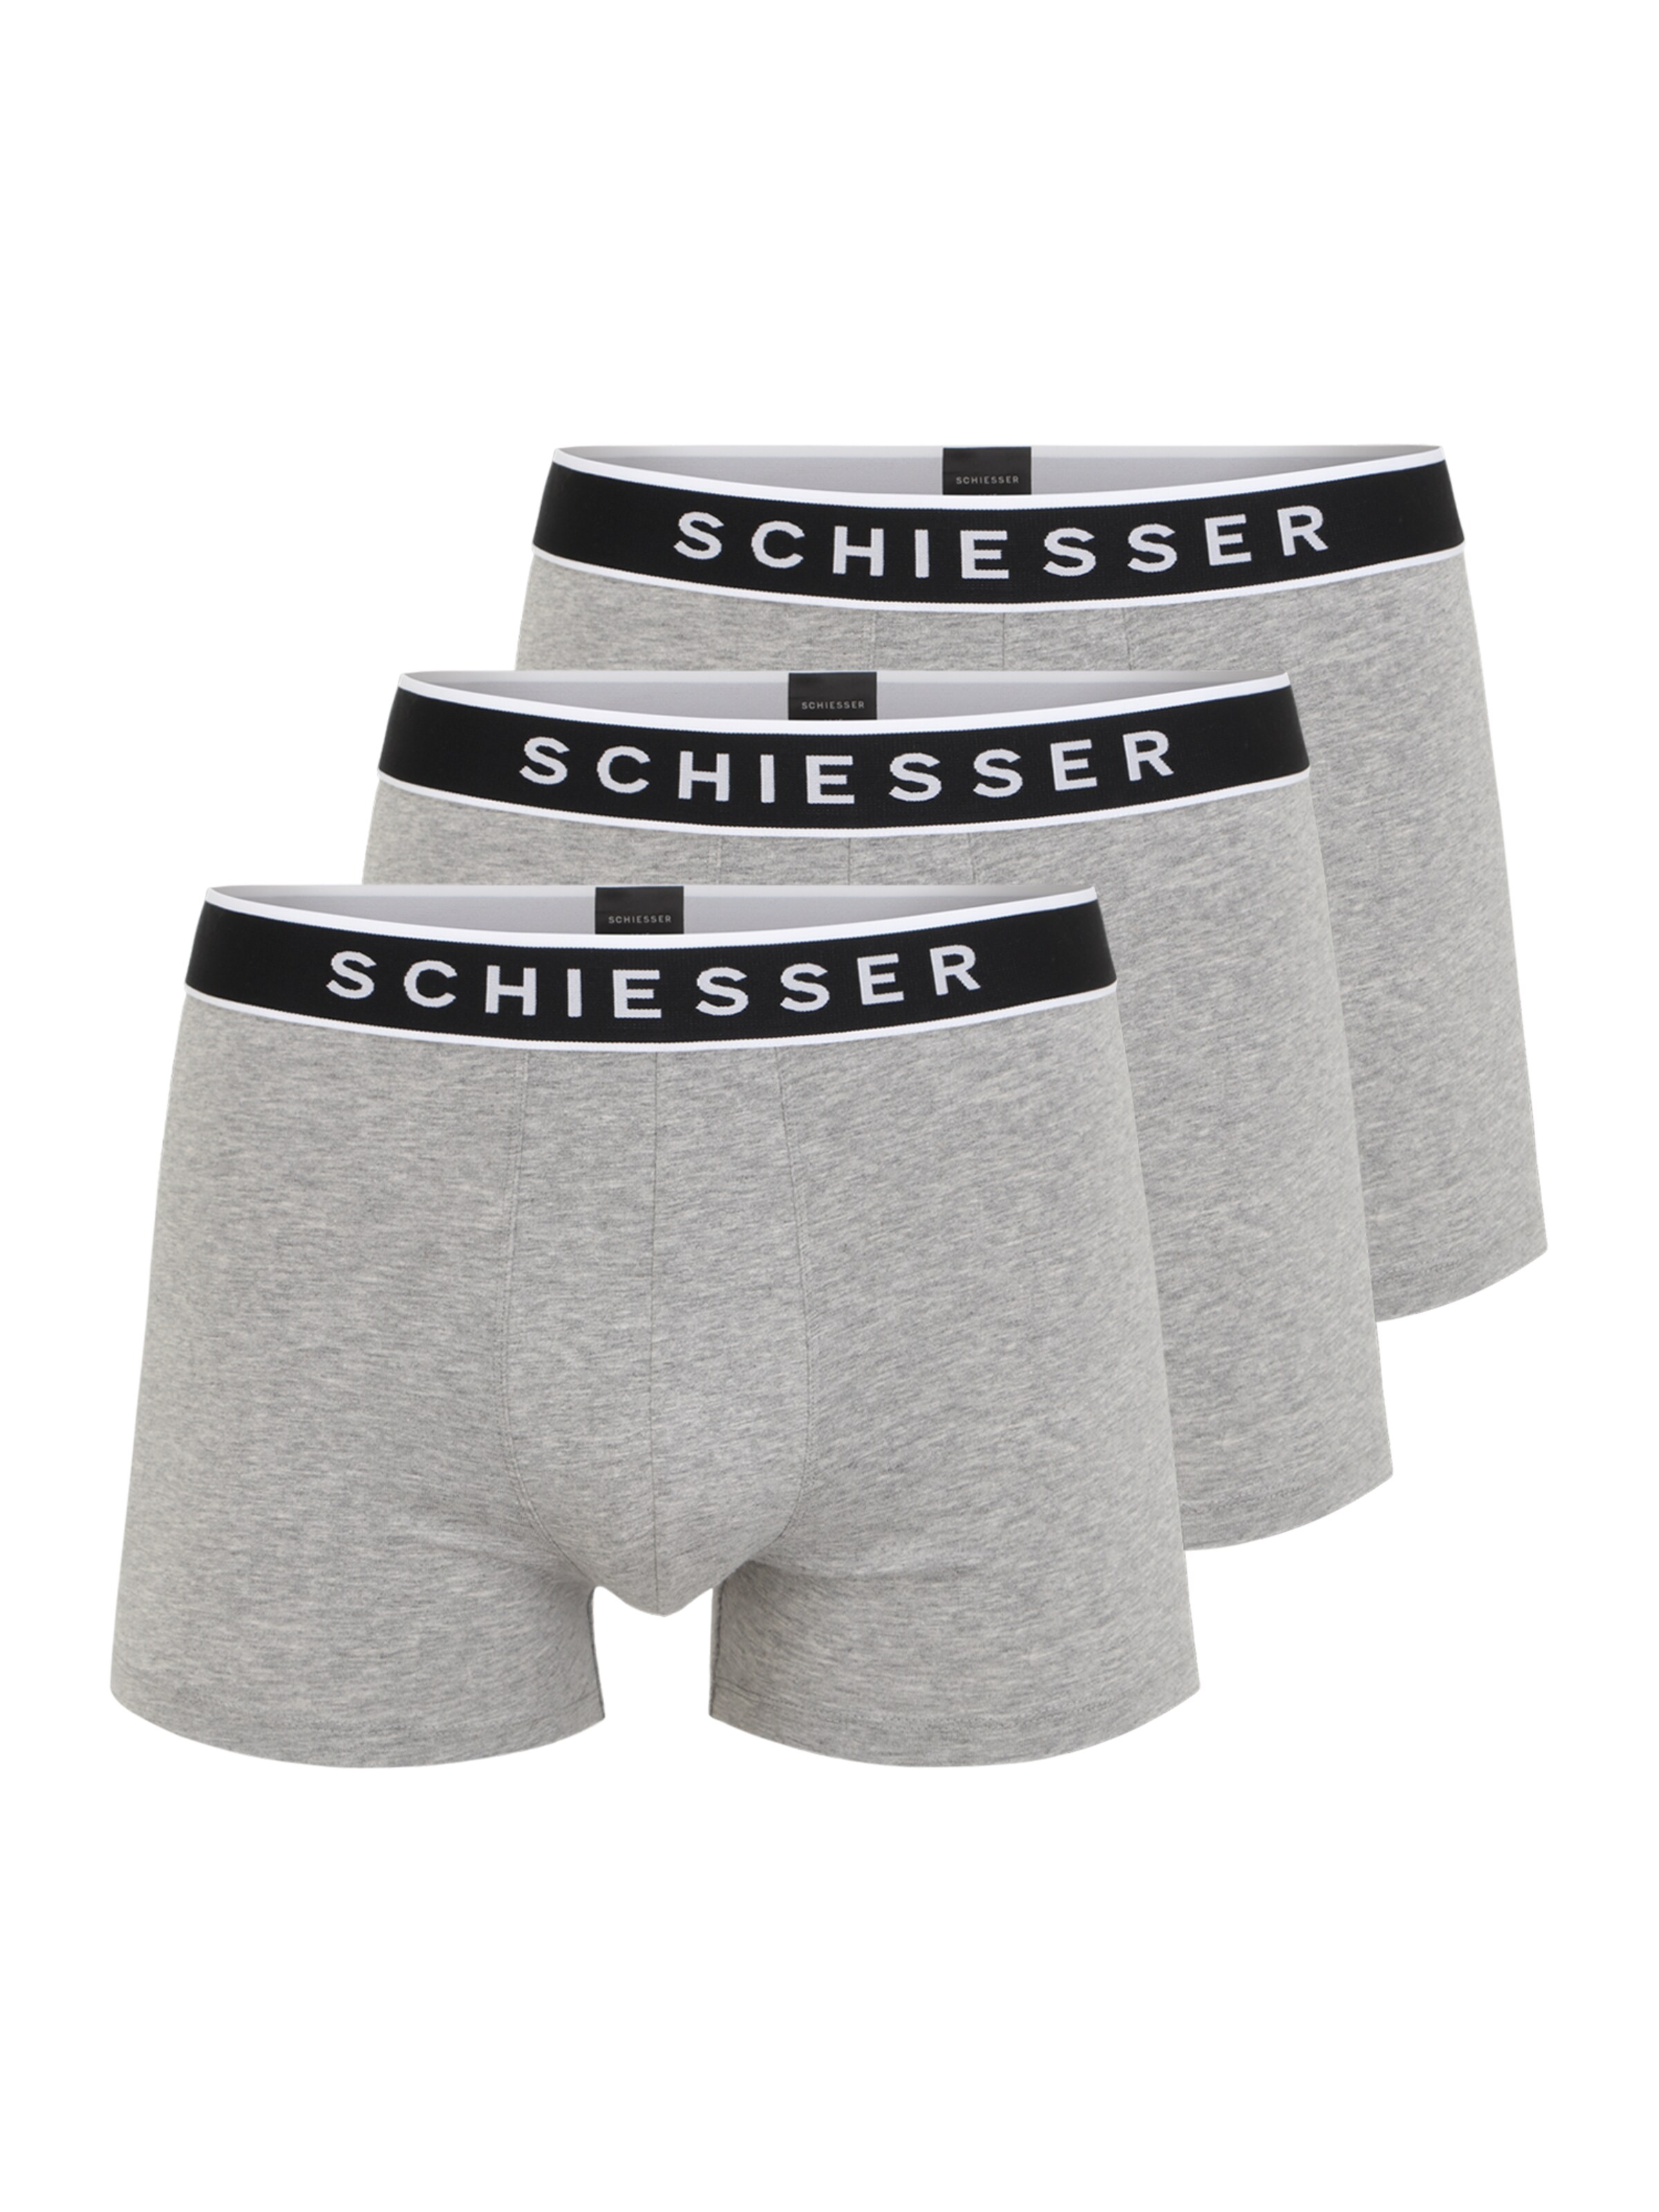 Männer Wäsche SCHIESSER Boxershorts in Graumeliert - GK31679